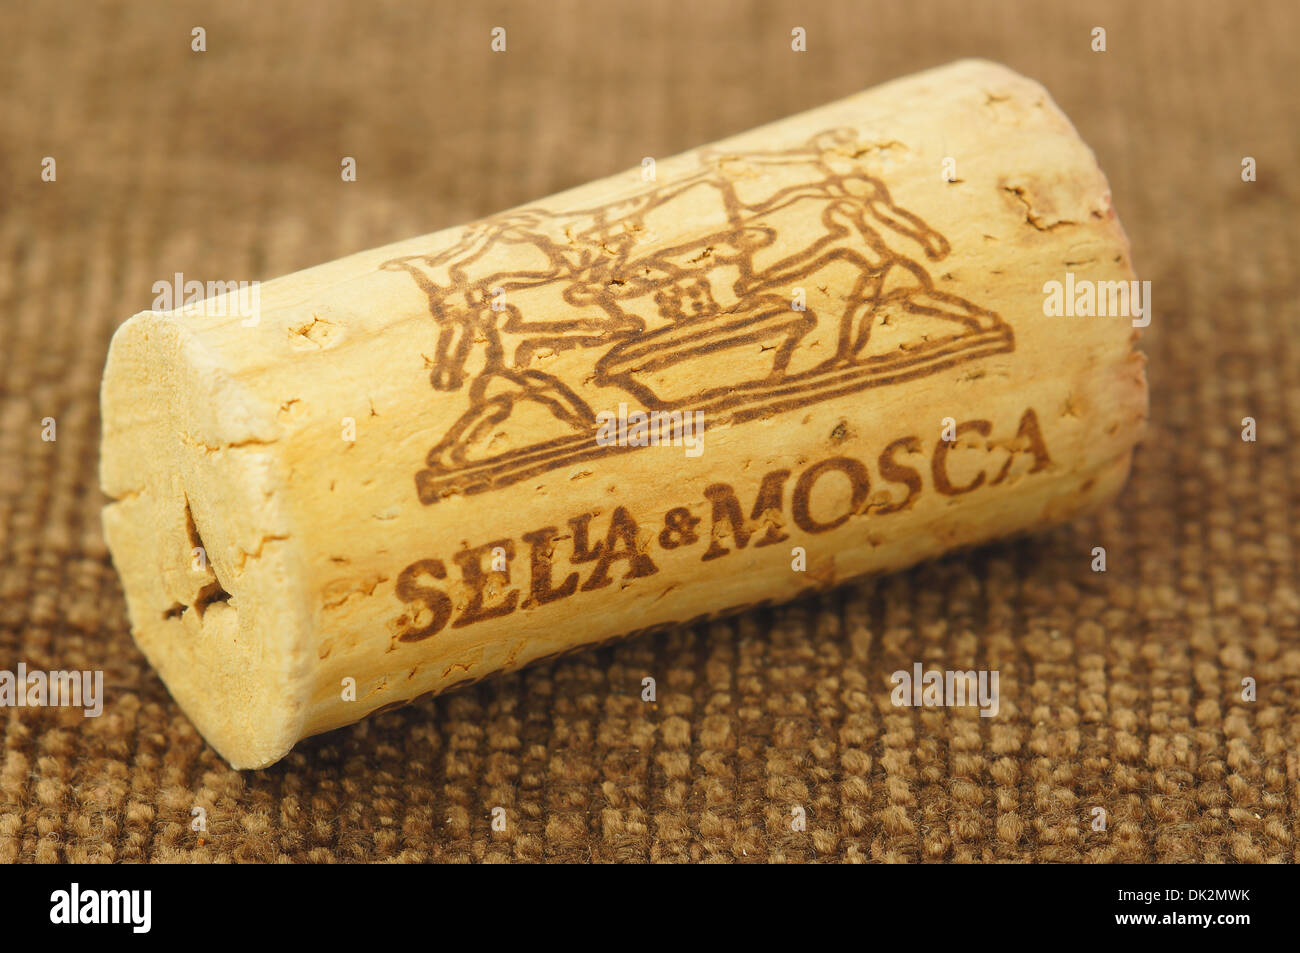 Cannonau Sella&Mosca Sardegna wine cork stopper Stock Photo